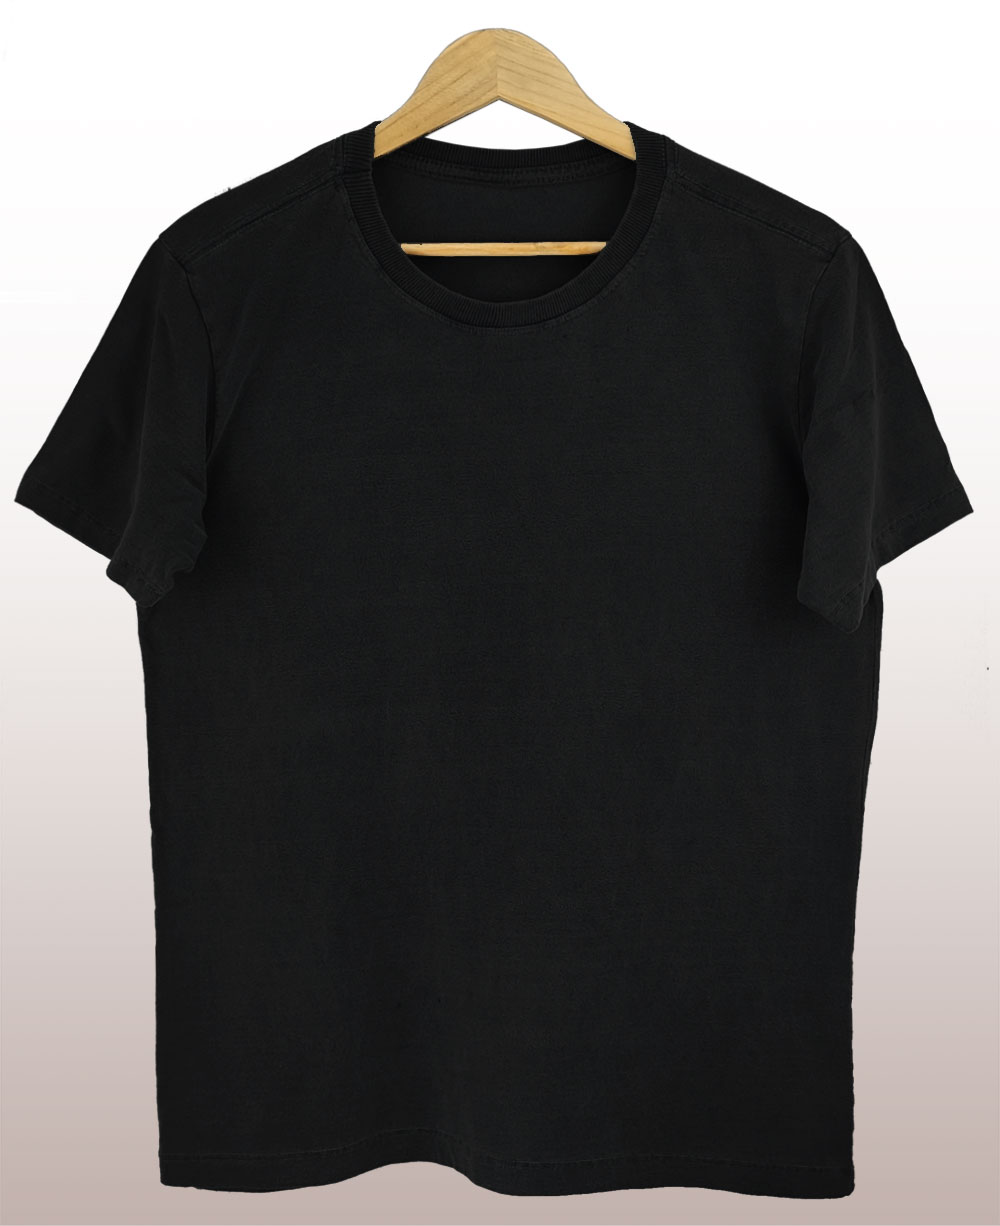 Camiseta preta amaciada - ESTONADO.COM - Sua Coleção com Estilo